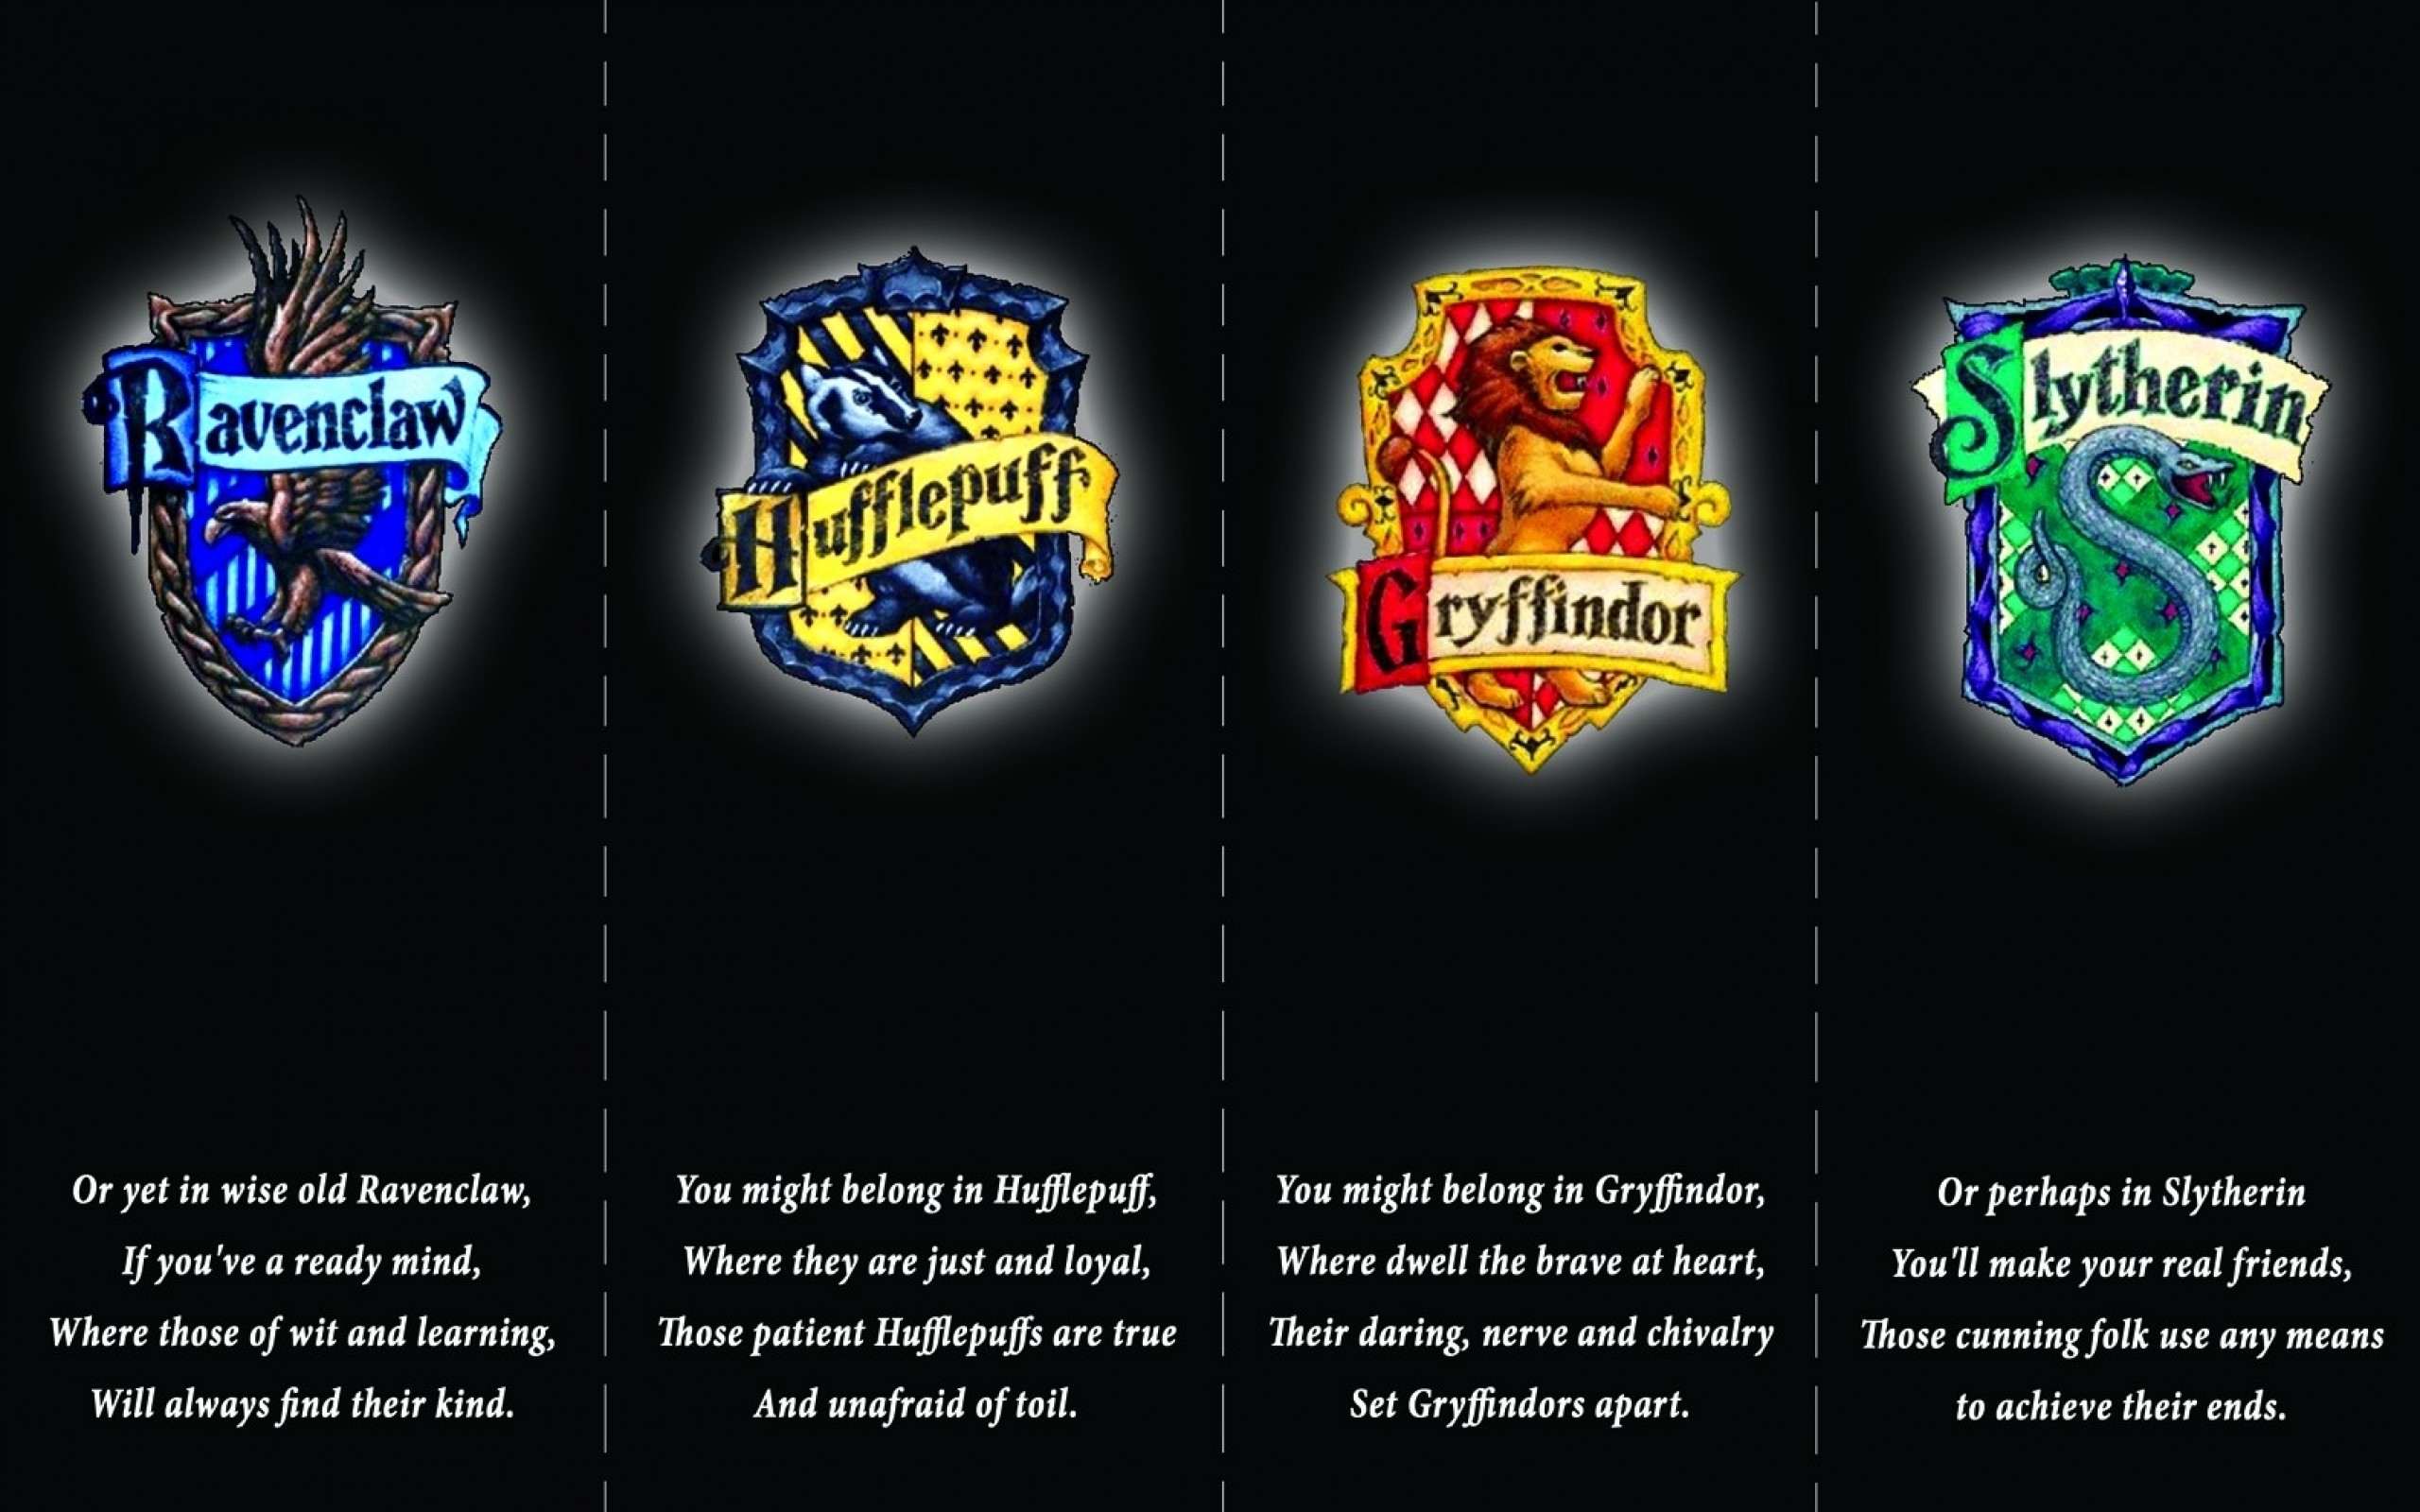 Harry Potter Aesthetic Wallpaper Slytherin - Singebloggg